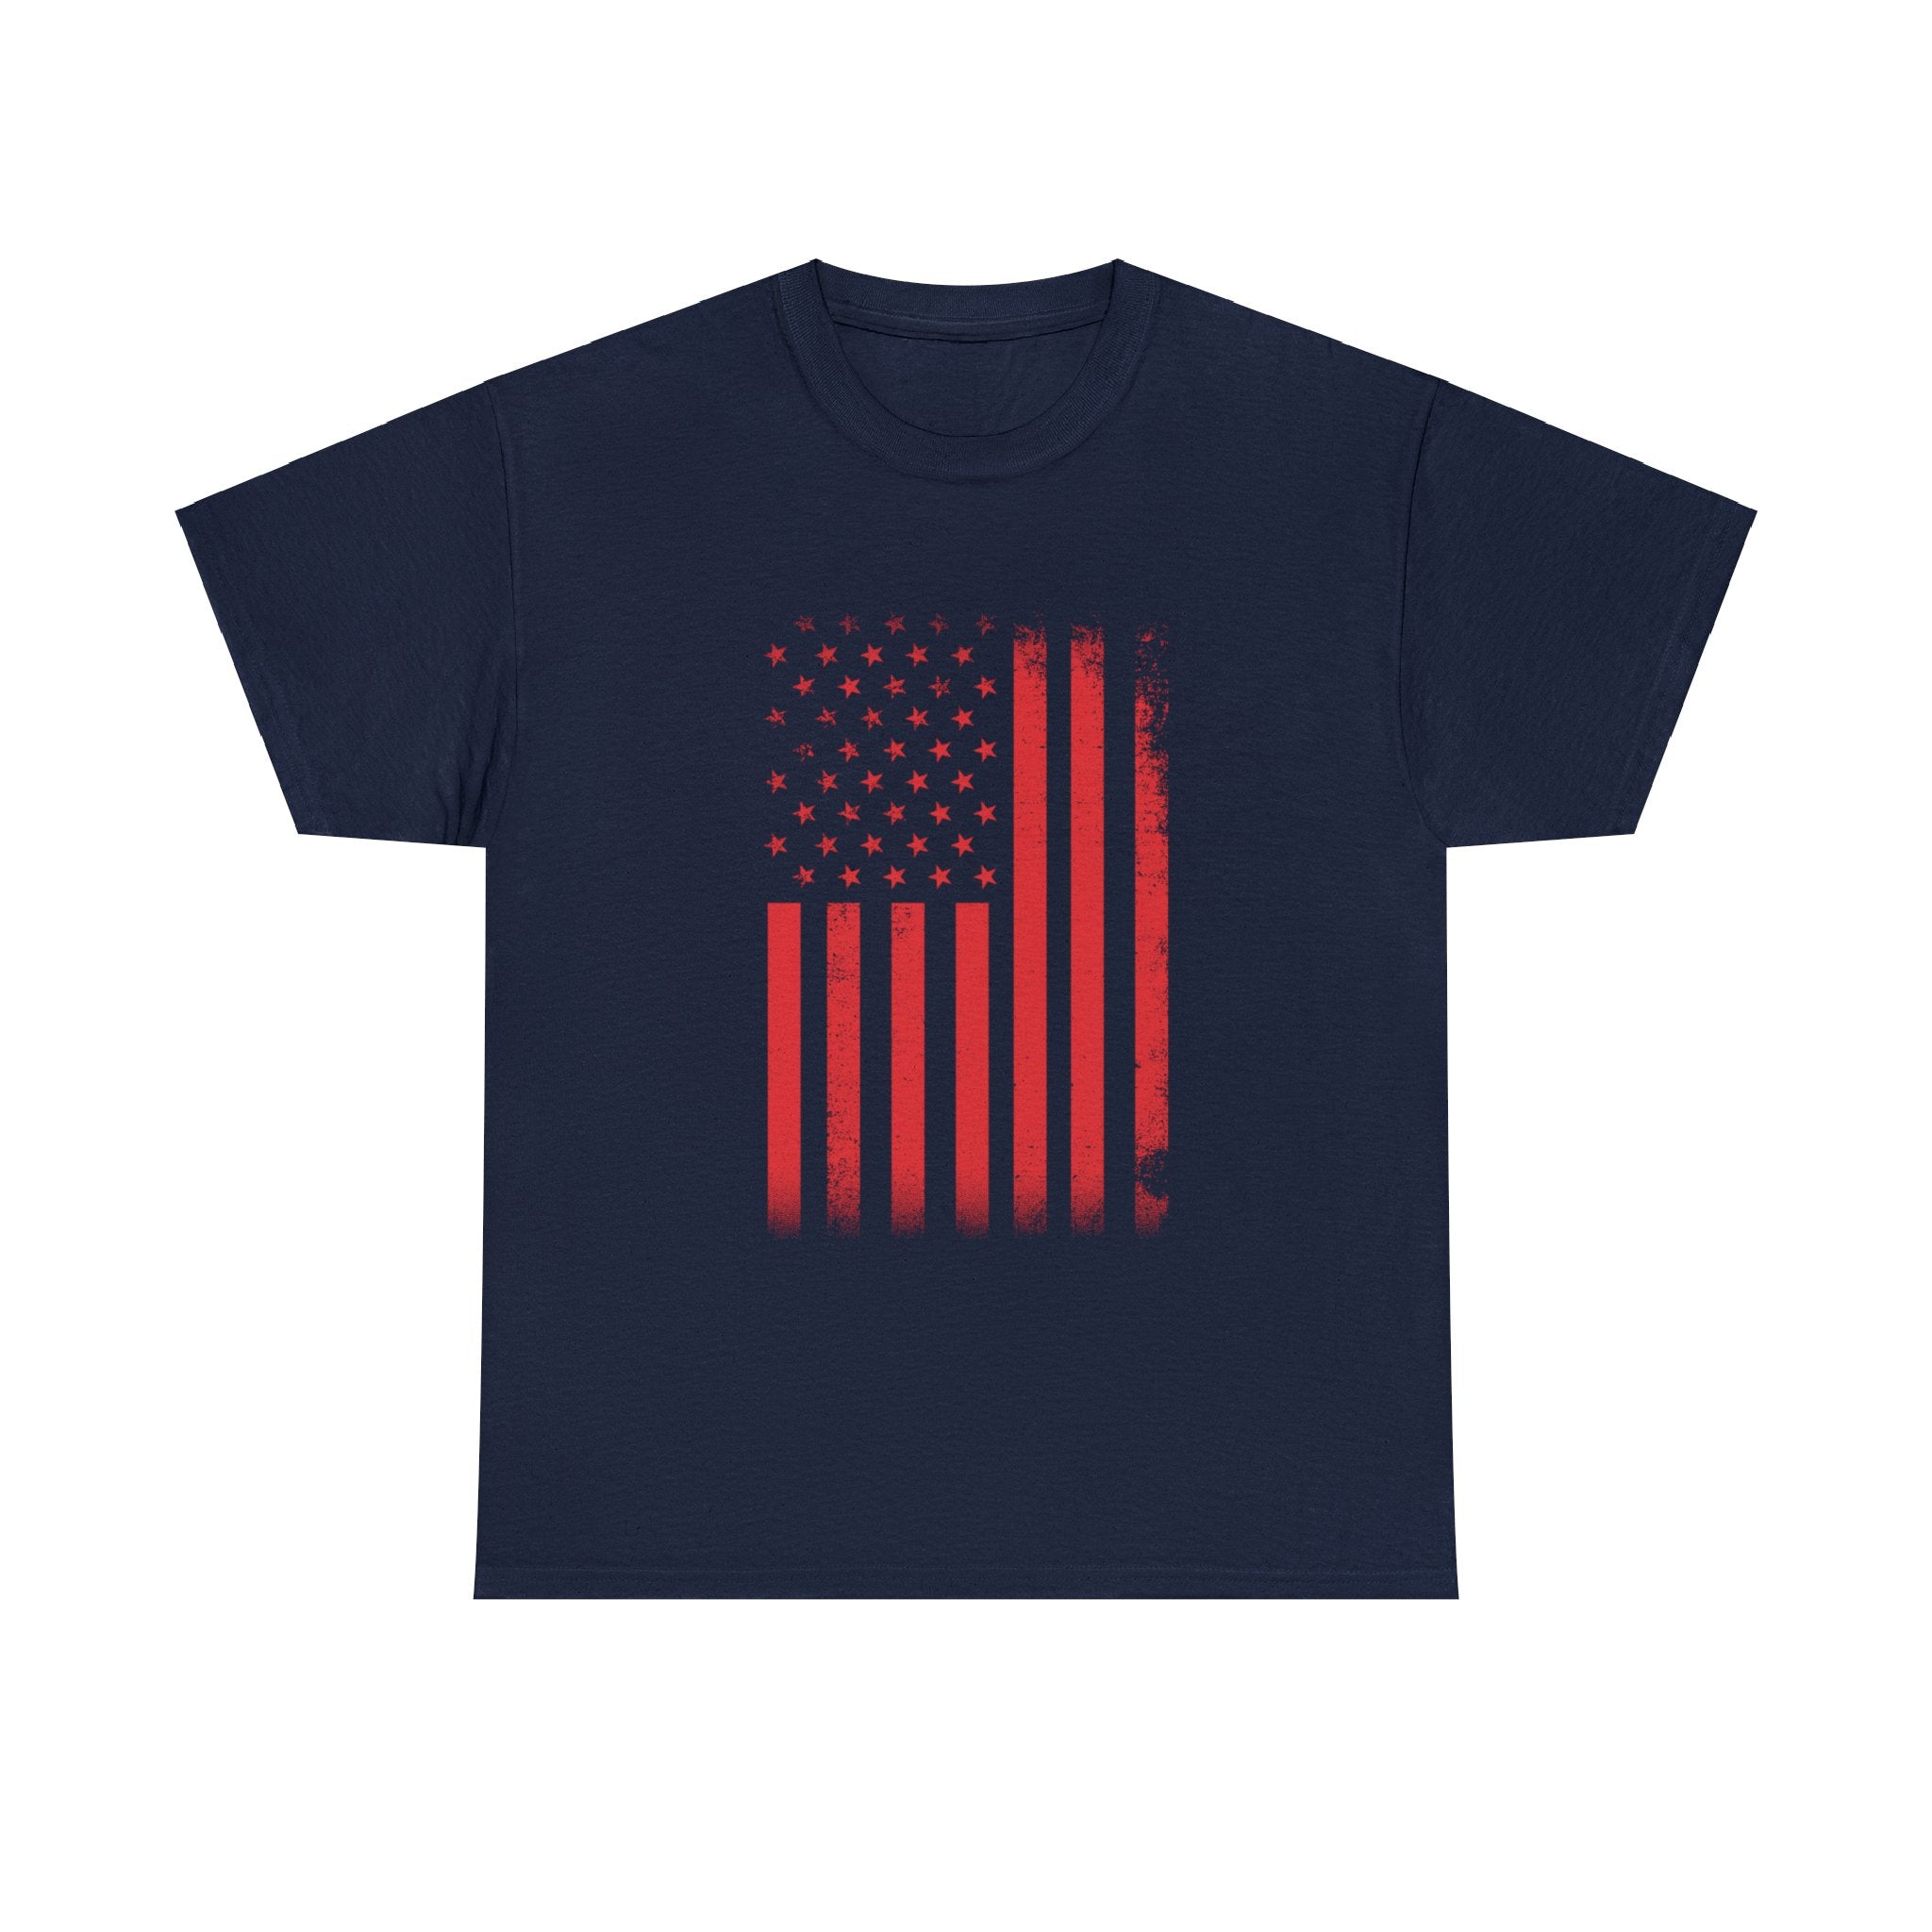 USA Flag T-shirt